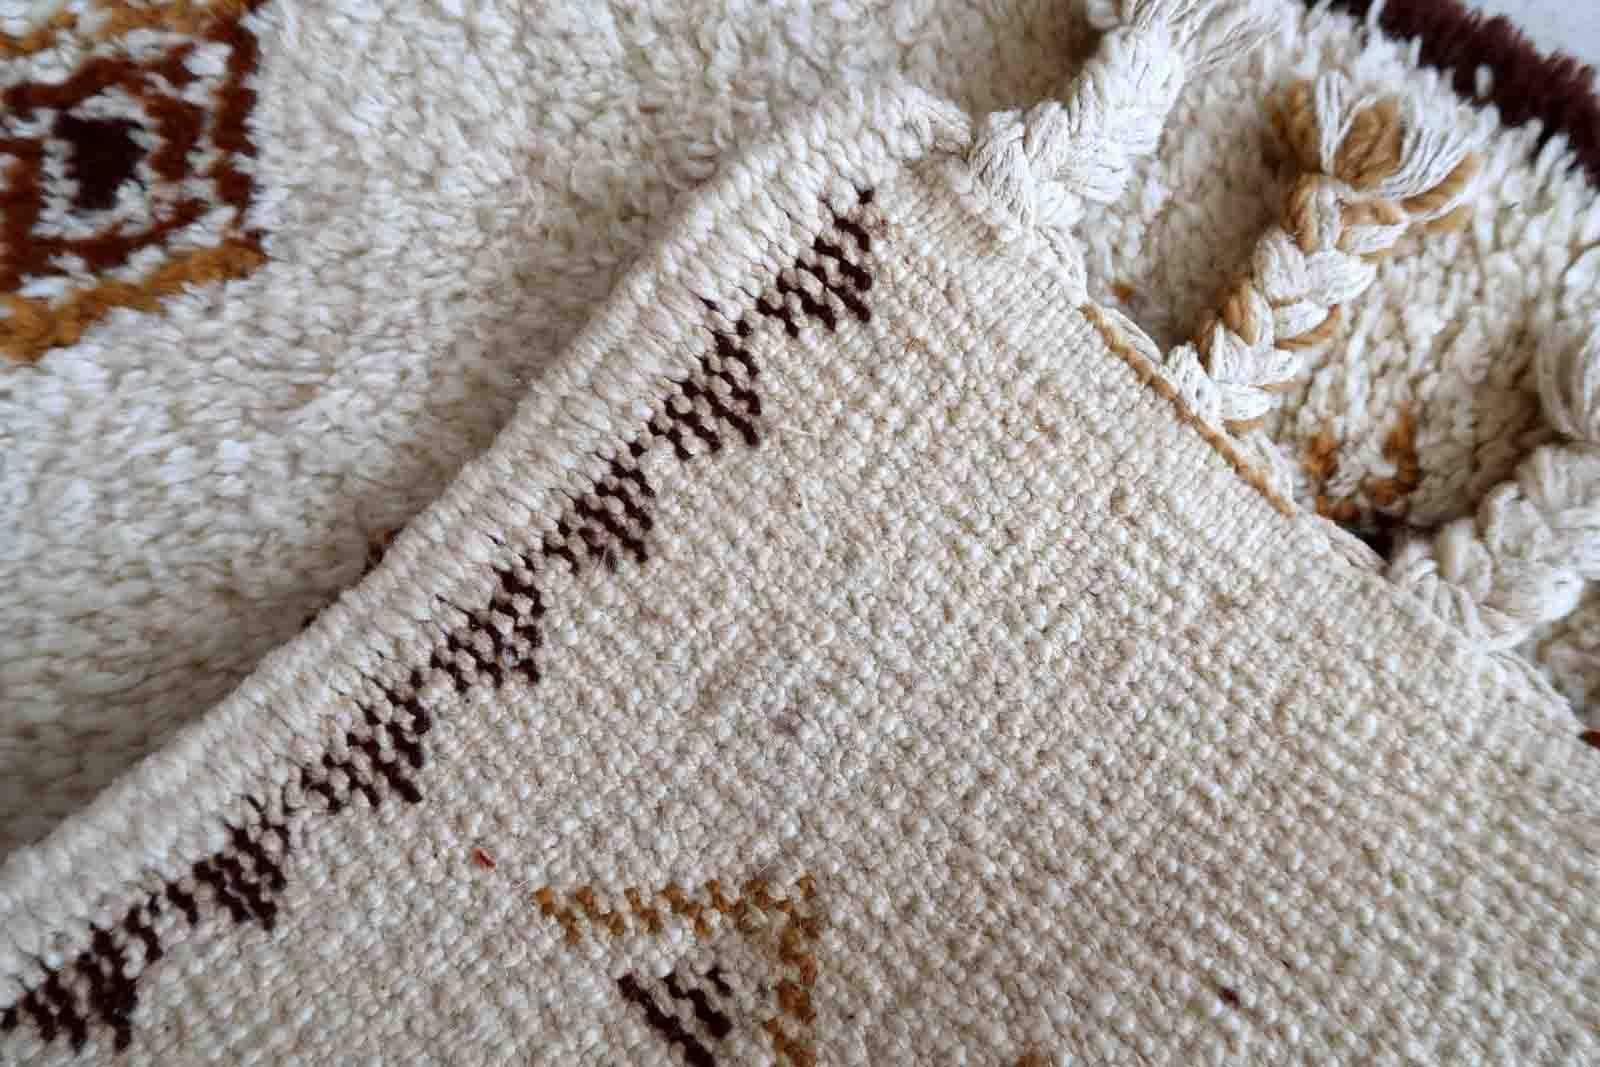 Handgefertigter marokkanischer Berberteppich aus Wolle in Weiß- und Brauntönen. Der Teppich stammt aus dem Ende des 20. Jahrhunderts und ist in gutem Originalzustand.

-Zustand: original gut,

-Umgebung: 1970er Jahre,

-Größe: 2,4' x 4,4'